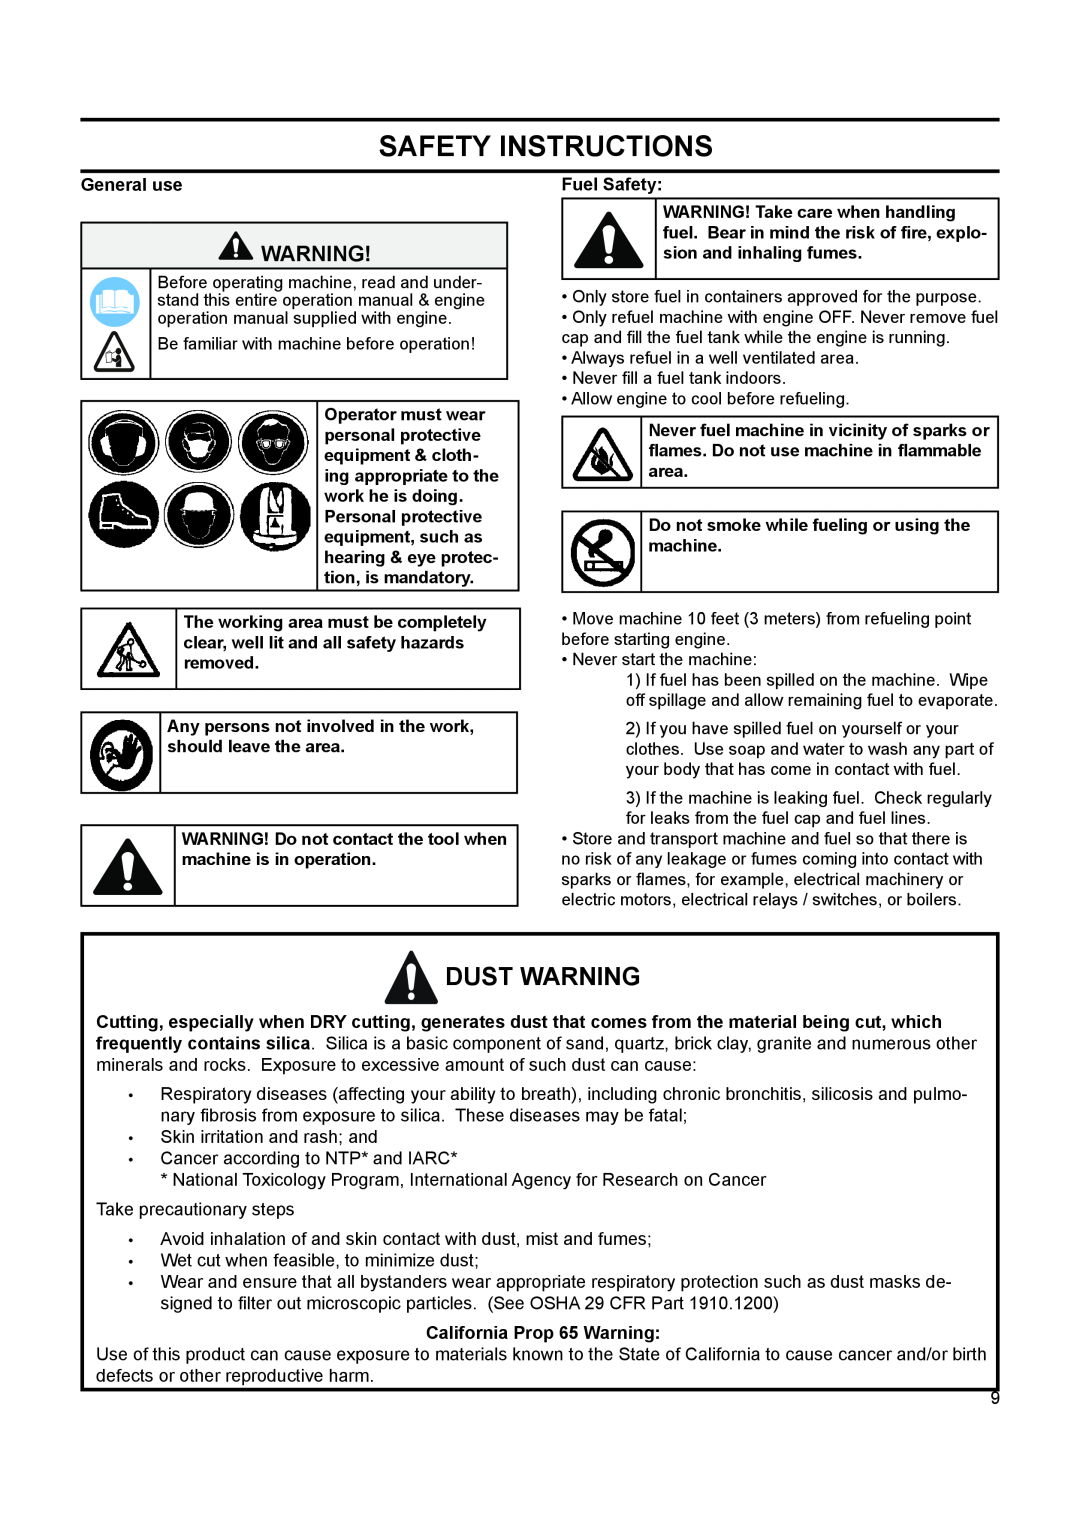 Husqvarna FS 524, FS 513, FS 520 manuel dutilisation Safety Instructions, Dust Warning 